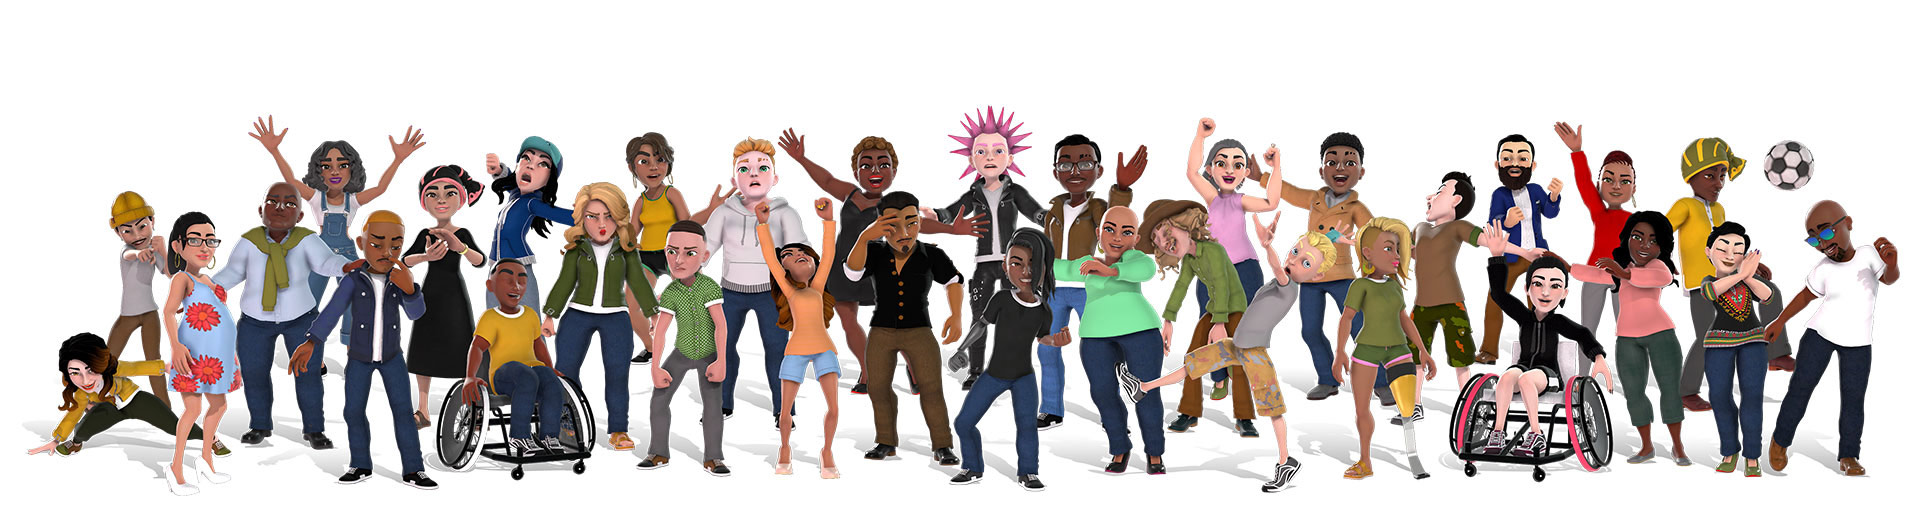 Avatares de Xbox que muestran a un grupo diverso de personas con diferentes trajes